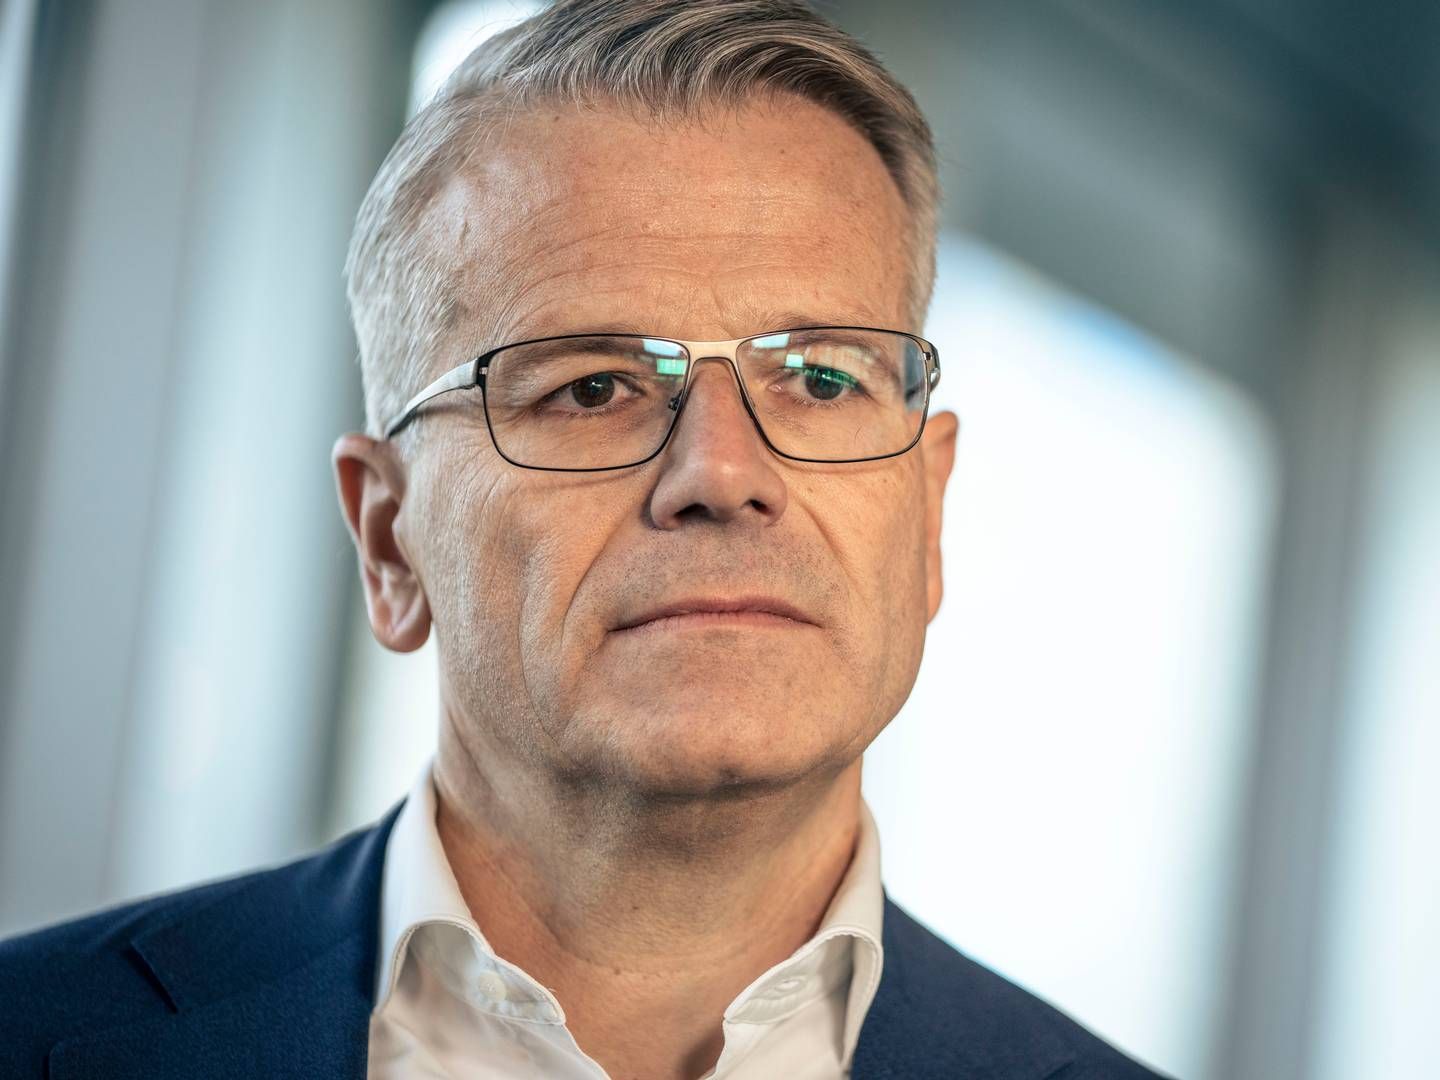 Vincent Clerc er adm. direktør for A.P. Møller - Mærsk. | Foto: Thomas Traasdahl/Ritzau Scanpix